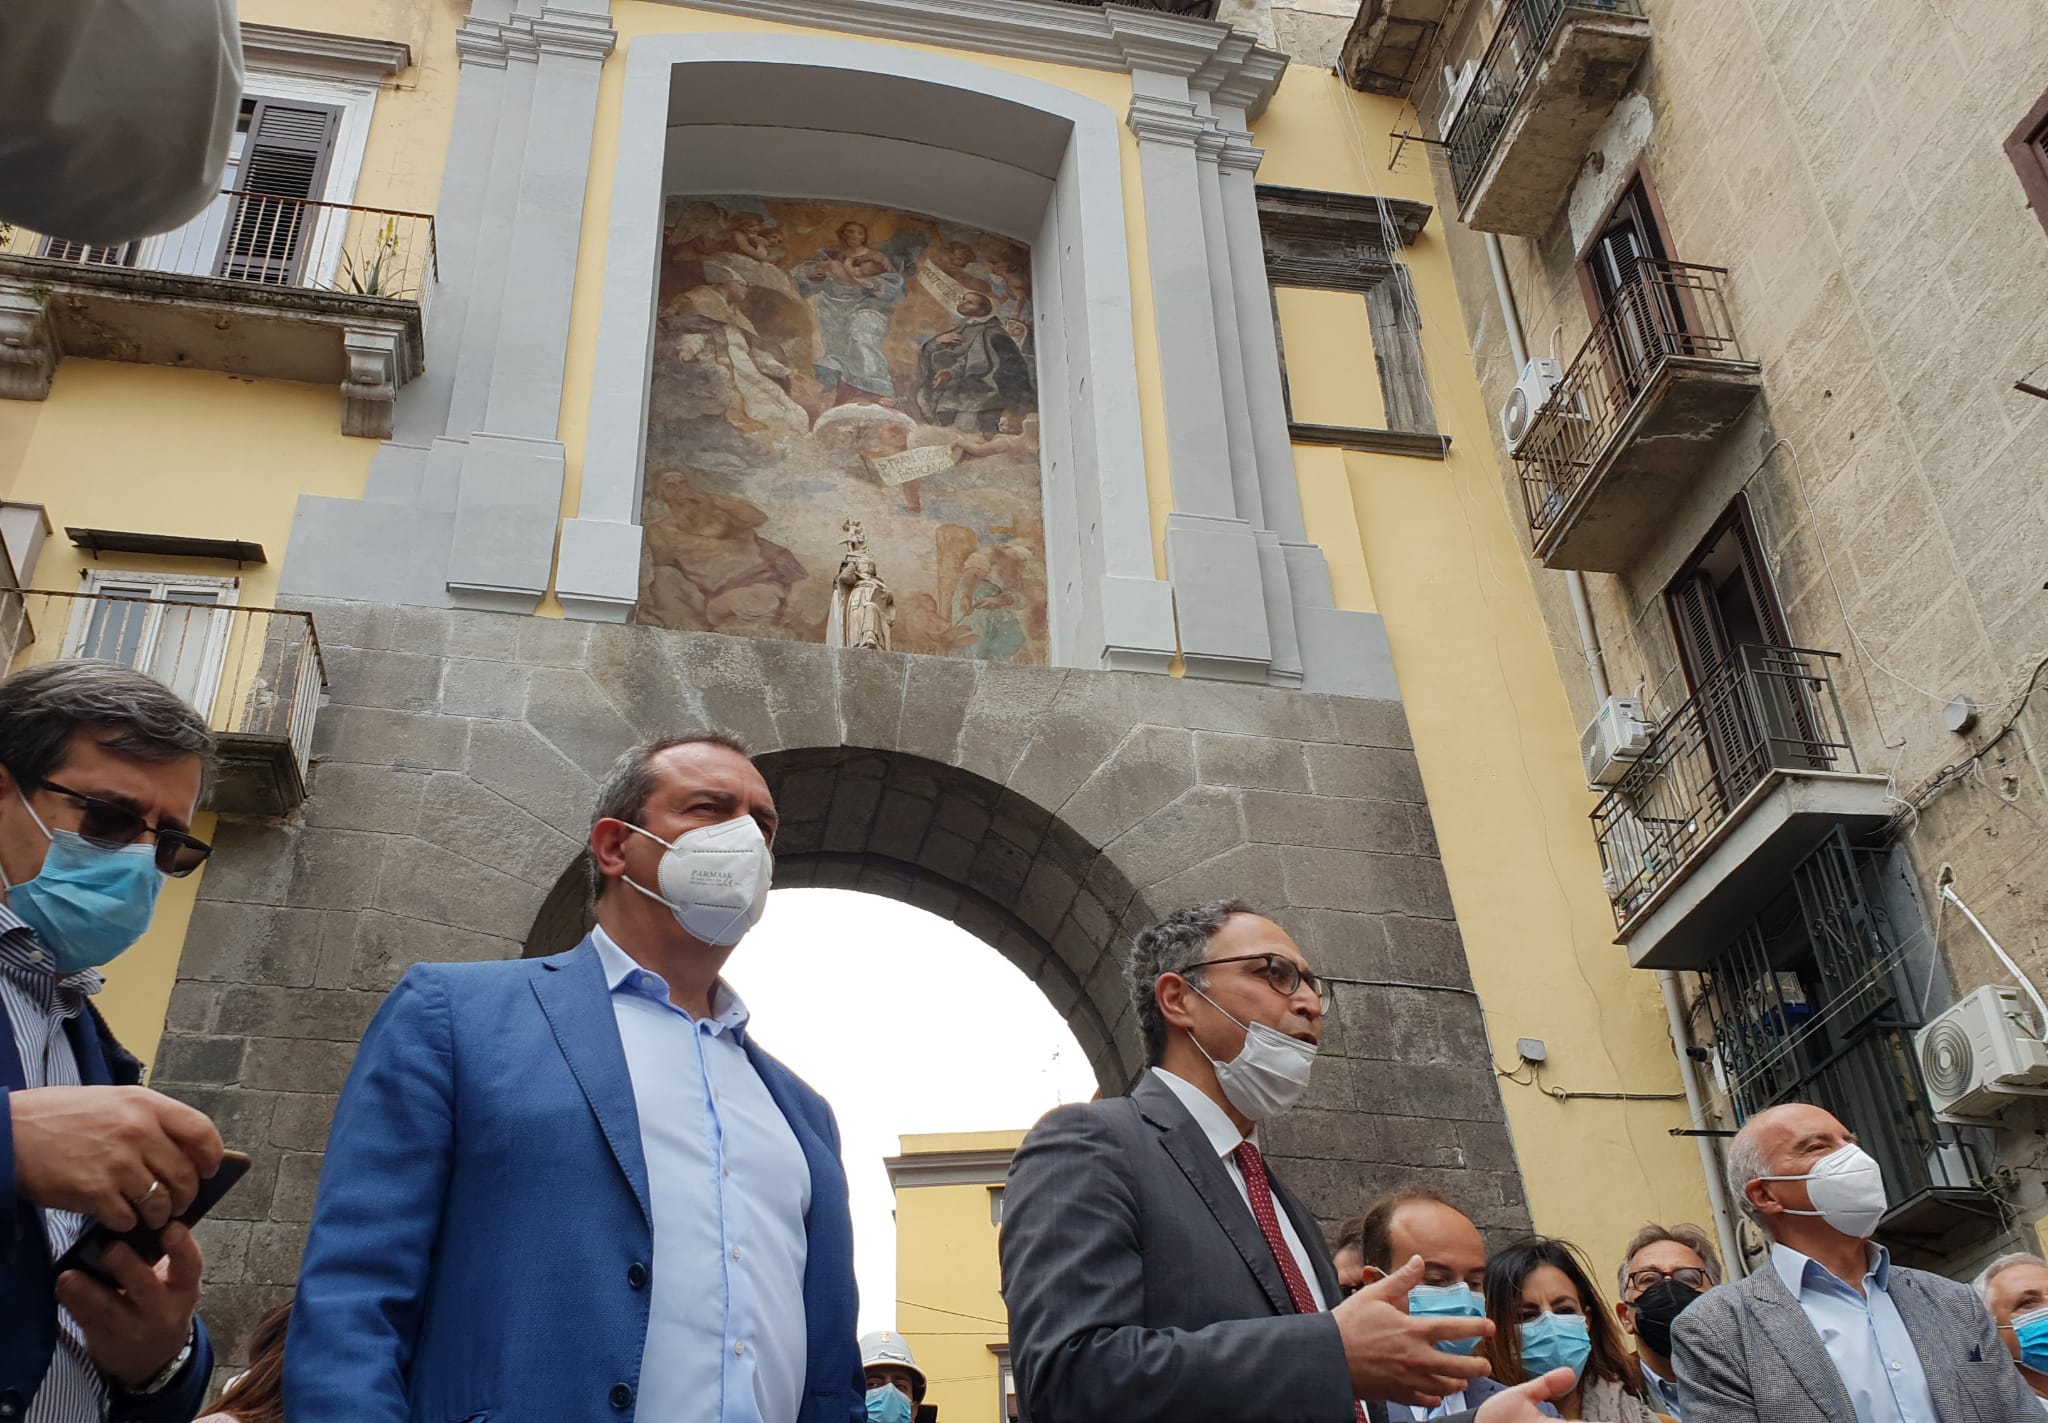 Napoli ‘ritrova’ il Mattia Preti su Porta San Gennaro